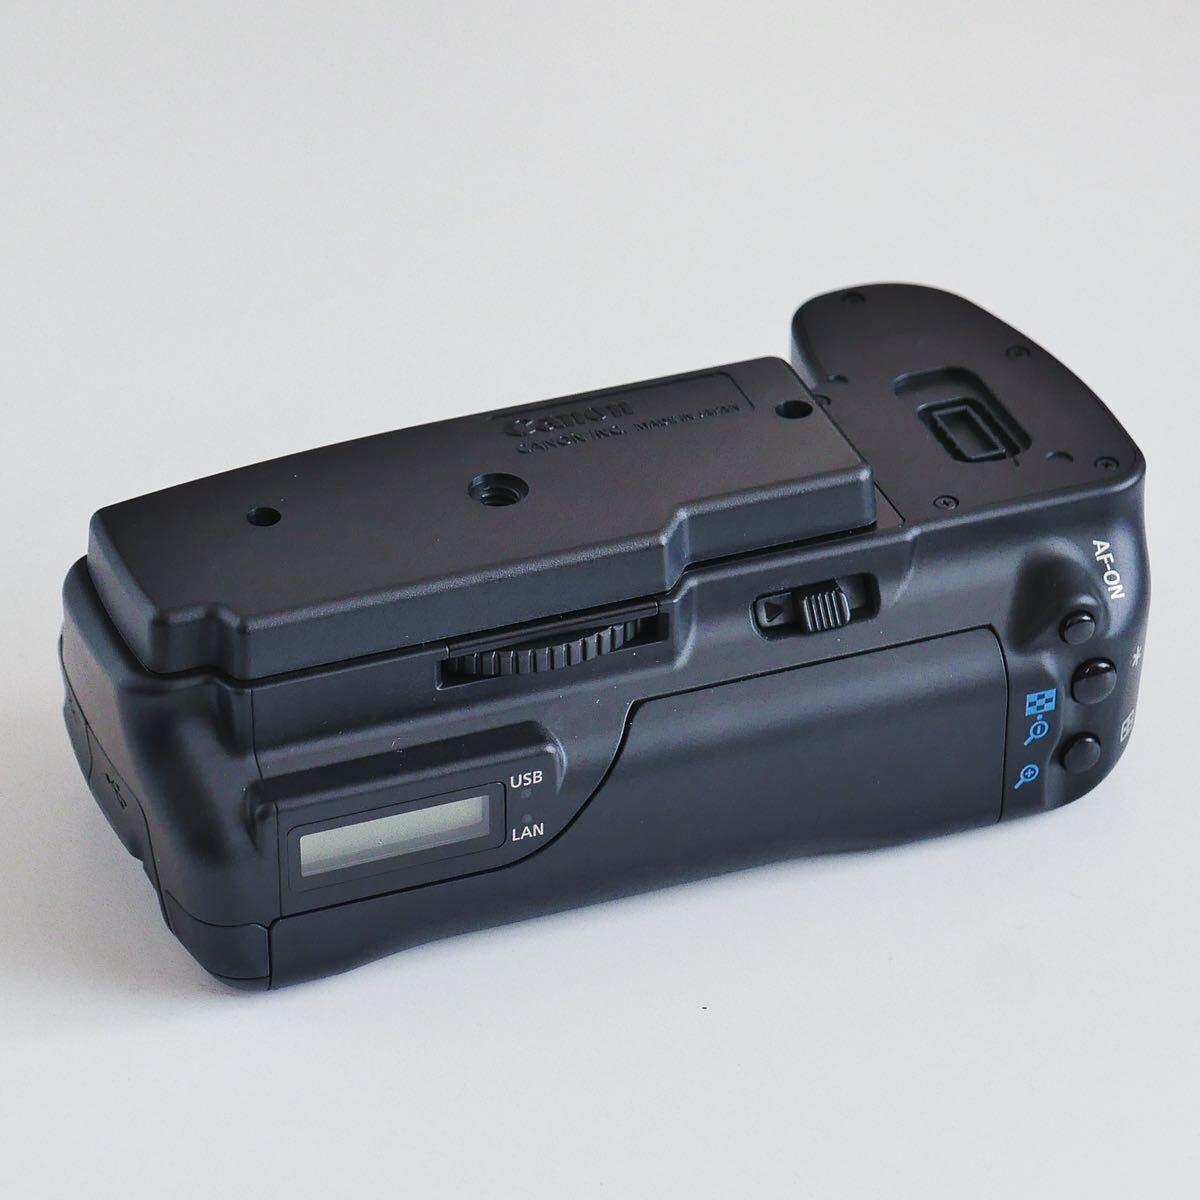 〈即決〉 Canon キヤノン WFT-E4 II B ワイヤレスファイルトランスミッター 5D MarkIIの画像2